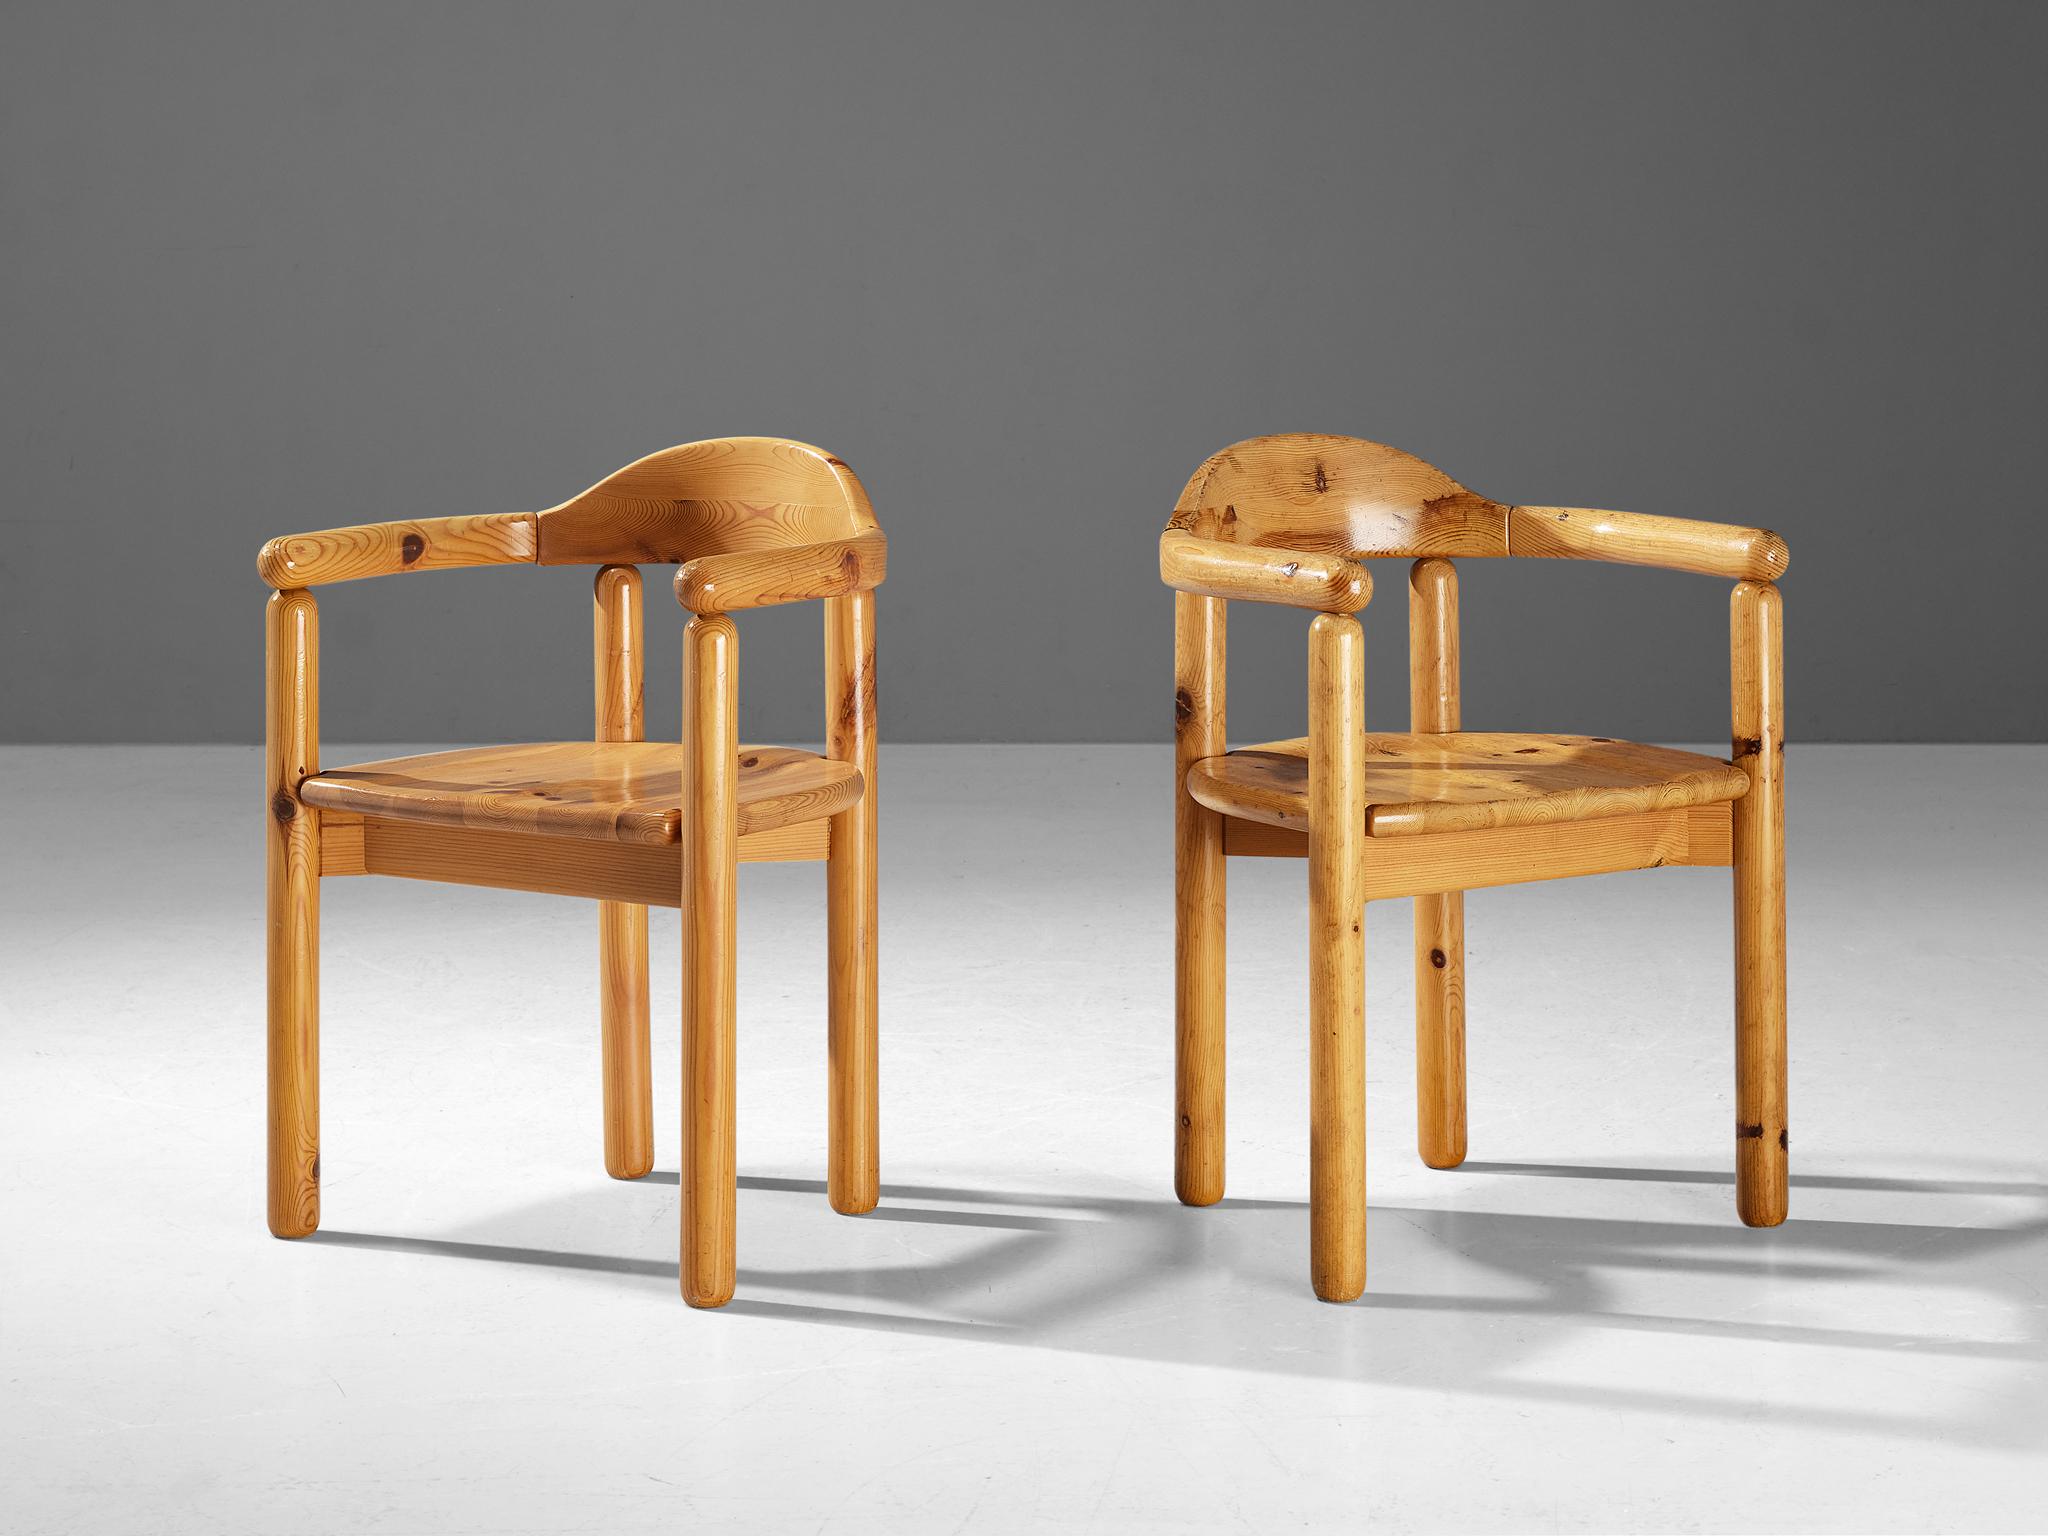 Rainer Daumiller pour Hirtshals Sawmill, paire de chaises de salle à manger, pin, Danemark, années 1970

De belles chaises de salle à manger organiques et naturelles en pin massif. Un design simpliste avec des bords arrondis et une attention pour